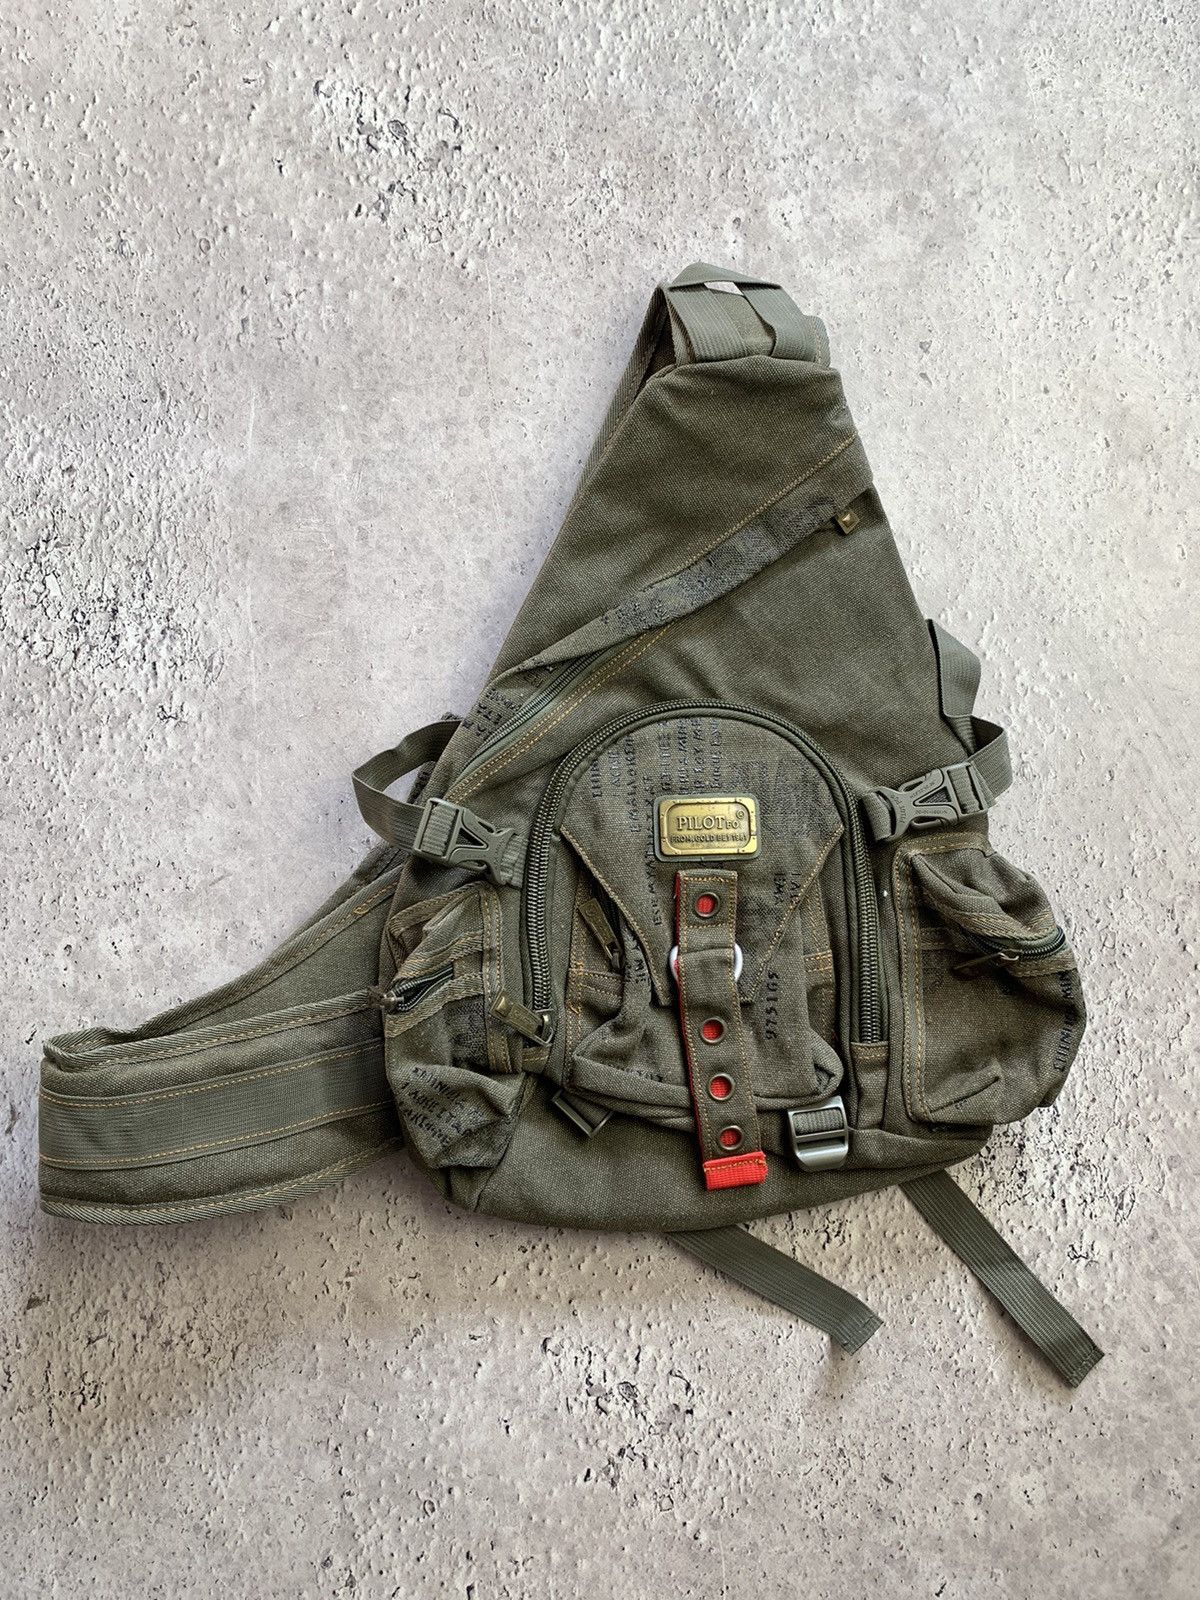 Diesel Diesel sling bag Vintage Y2K multi pocket bag military 90s 